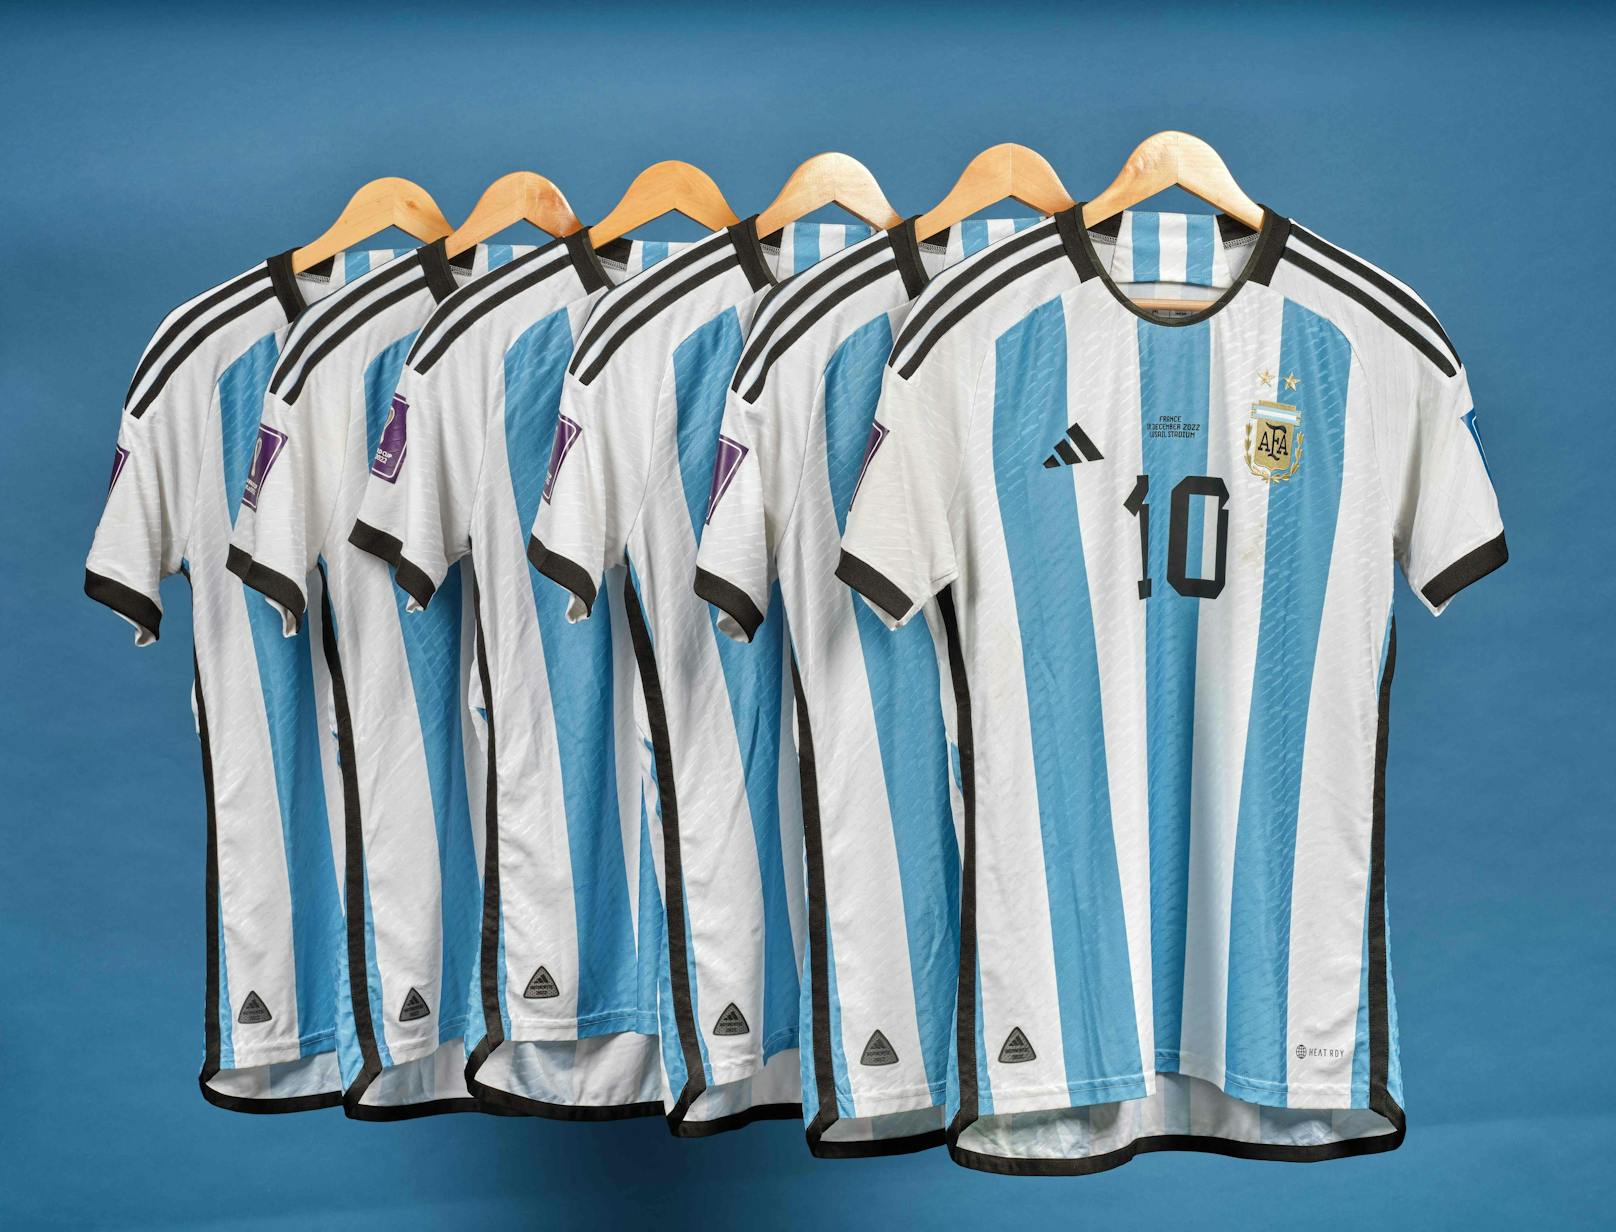 Sechs Argentinien-Trikots, die Lionel Messi bei WM im Katar trug, kommen nun unter den Hammer. Mit der Versteigerung sollen über zehn Millionen Euro erzielt werden.